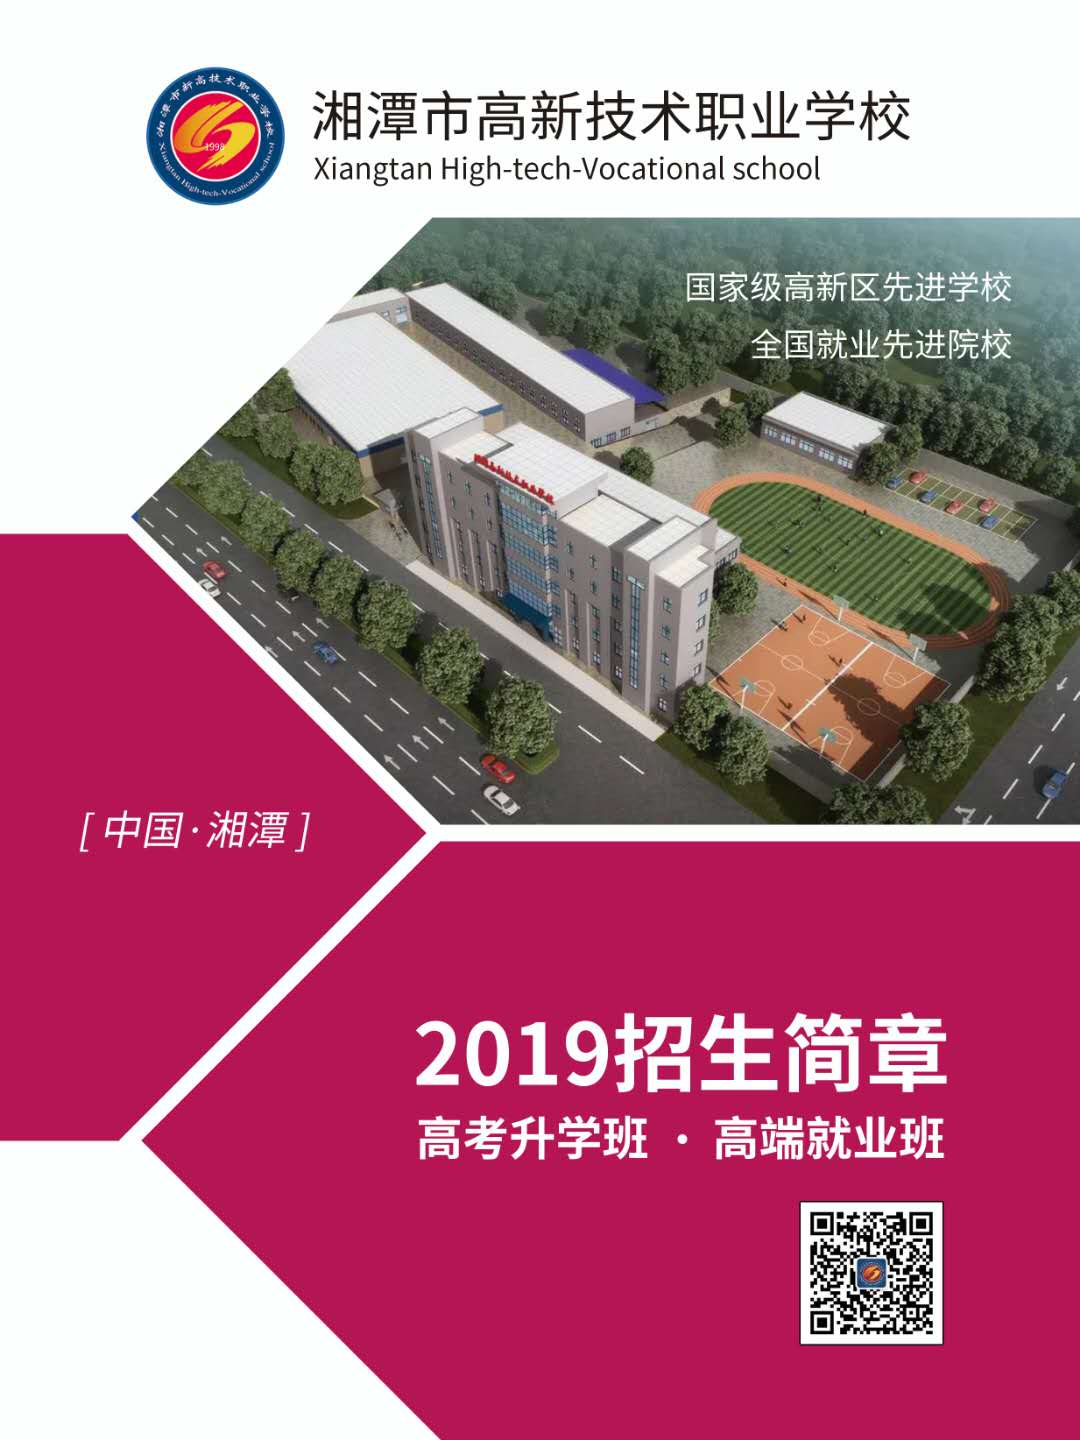  湘潭市高新技术职业学校 